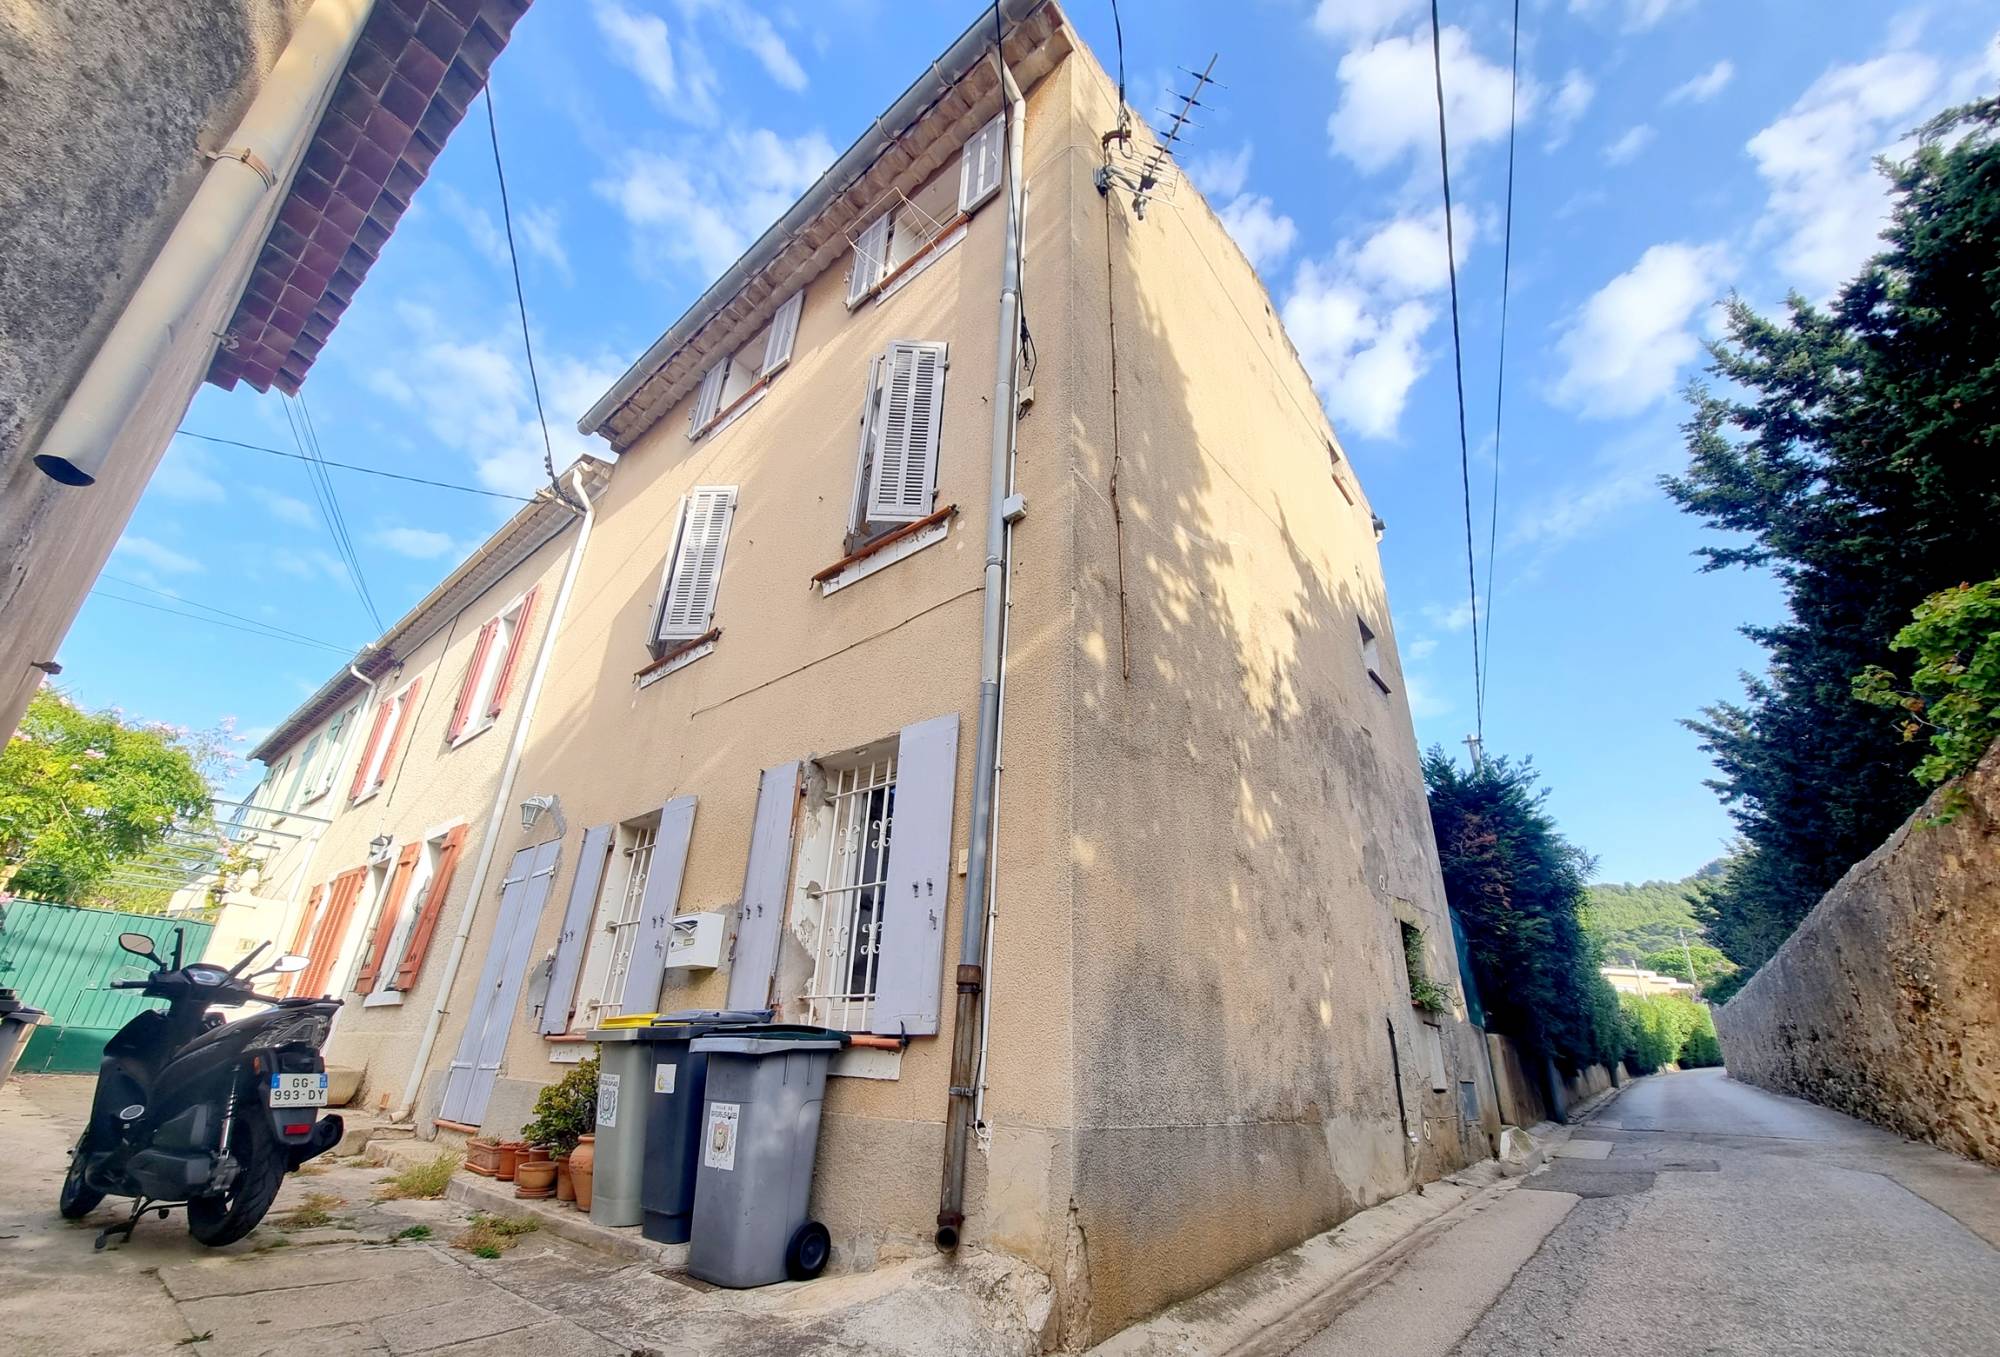 Maison de hameau du XIXe siècle à vendre à Six-Fours, dans le département du Var